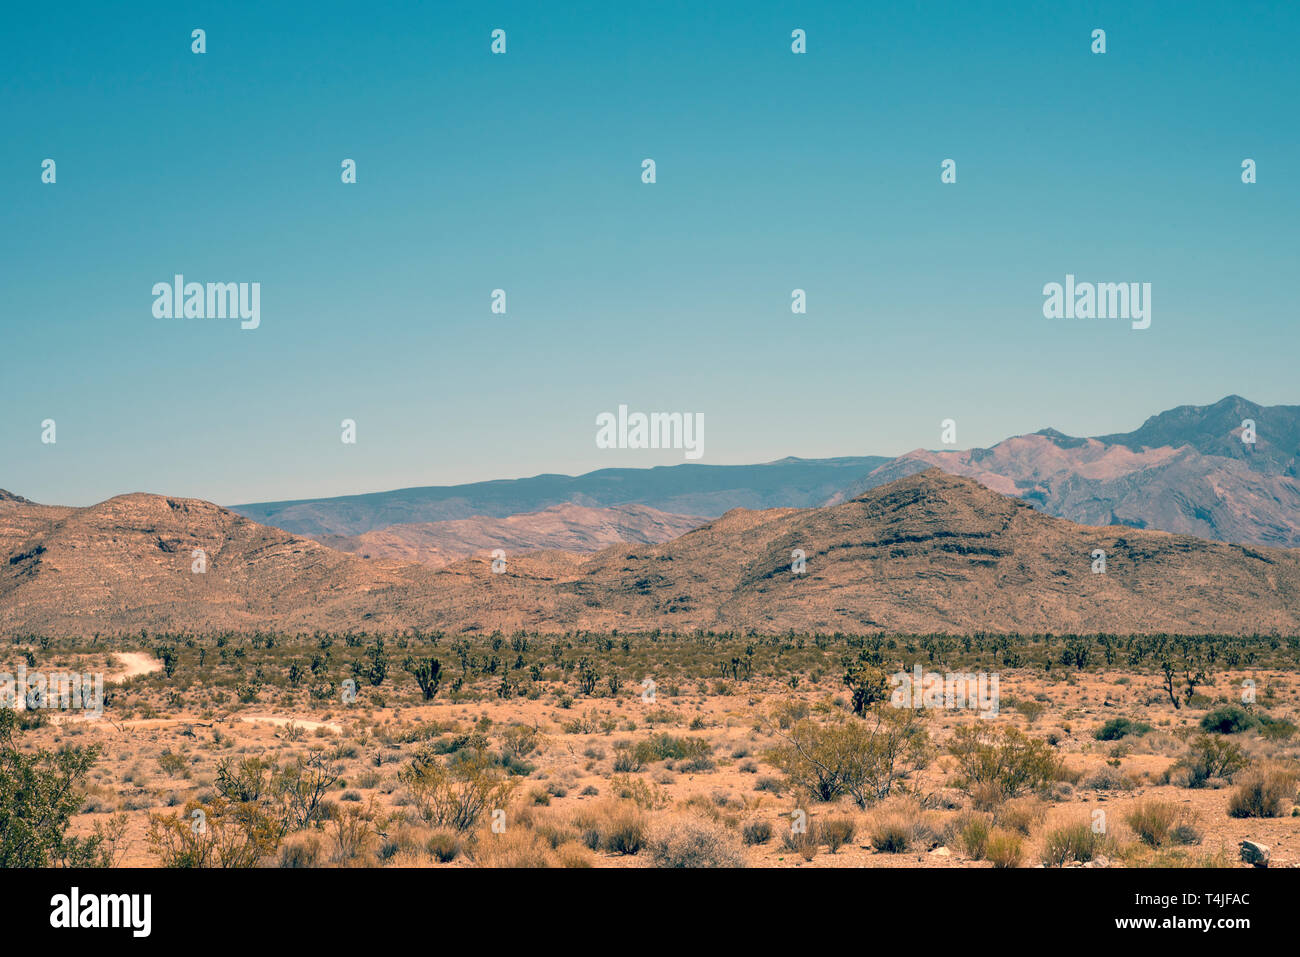 Wüste Büsche, mit Piste in Unfruchtbare felsige Hügel führenden über unter einem blauen Himmel. Stockfoto